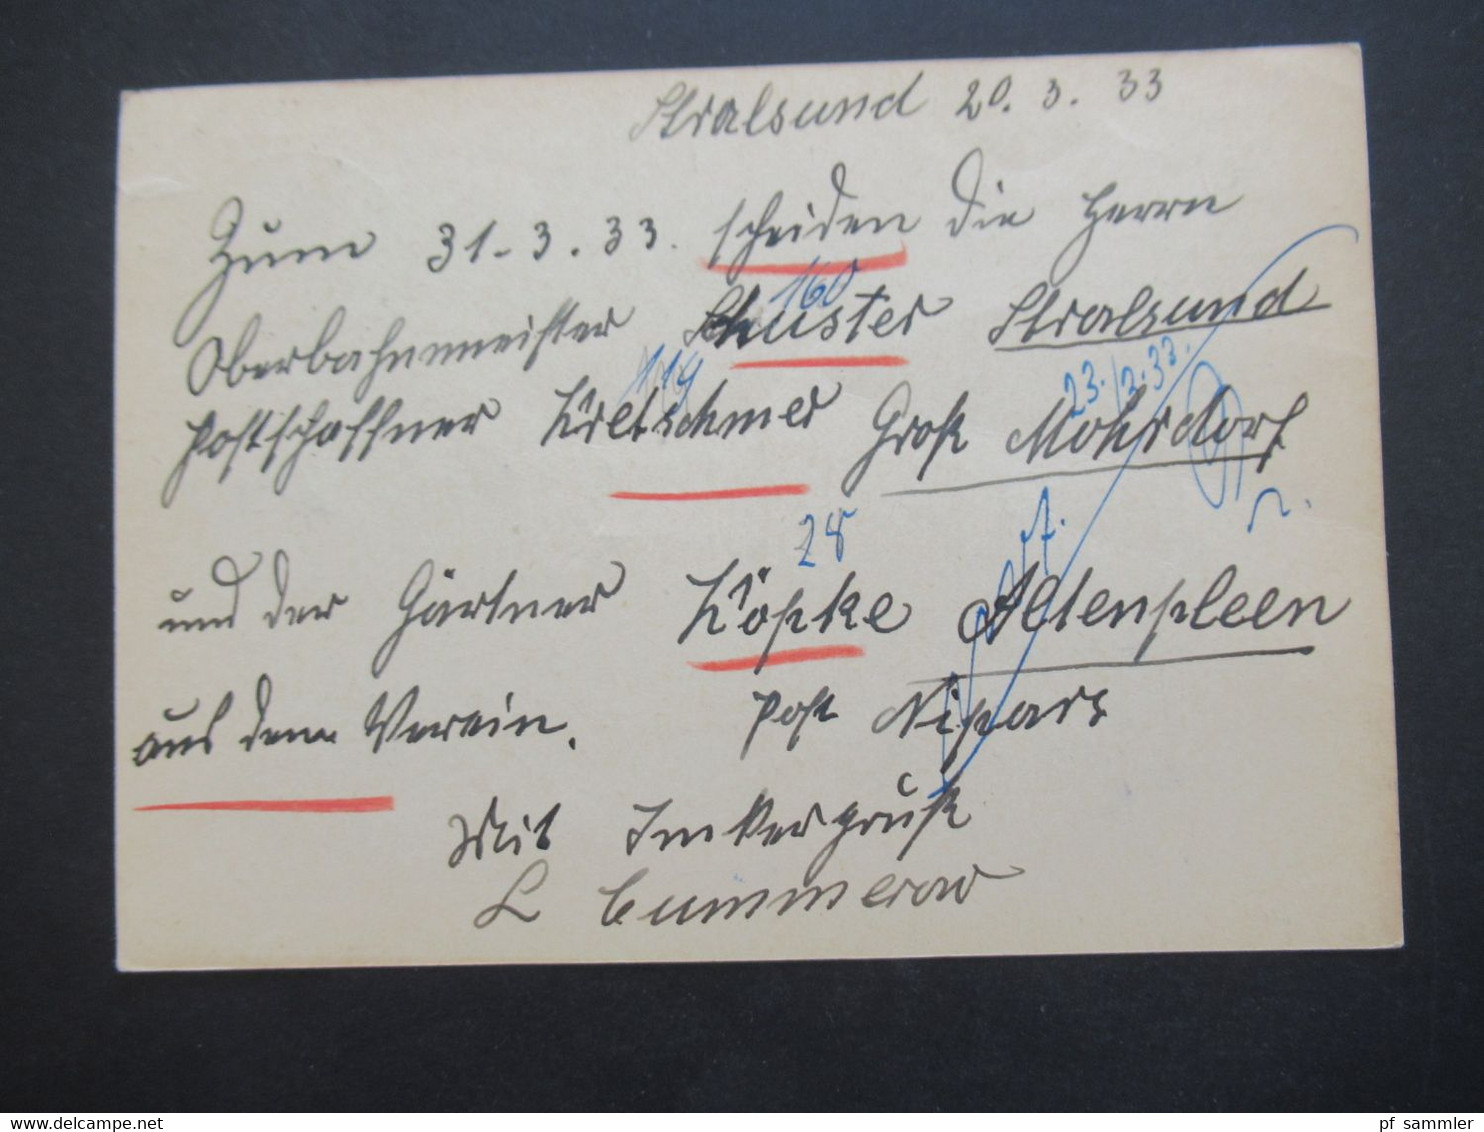 DR 1932 / 33 Pommern / Vorpommern OPD Stettin 40 Ganzsachen verschiedene Orte! Alle nach Leipzig an die Bienen Zeitung